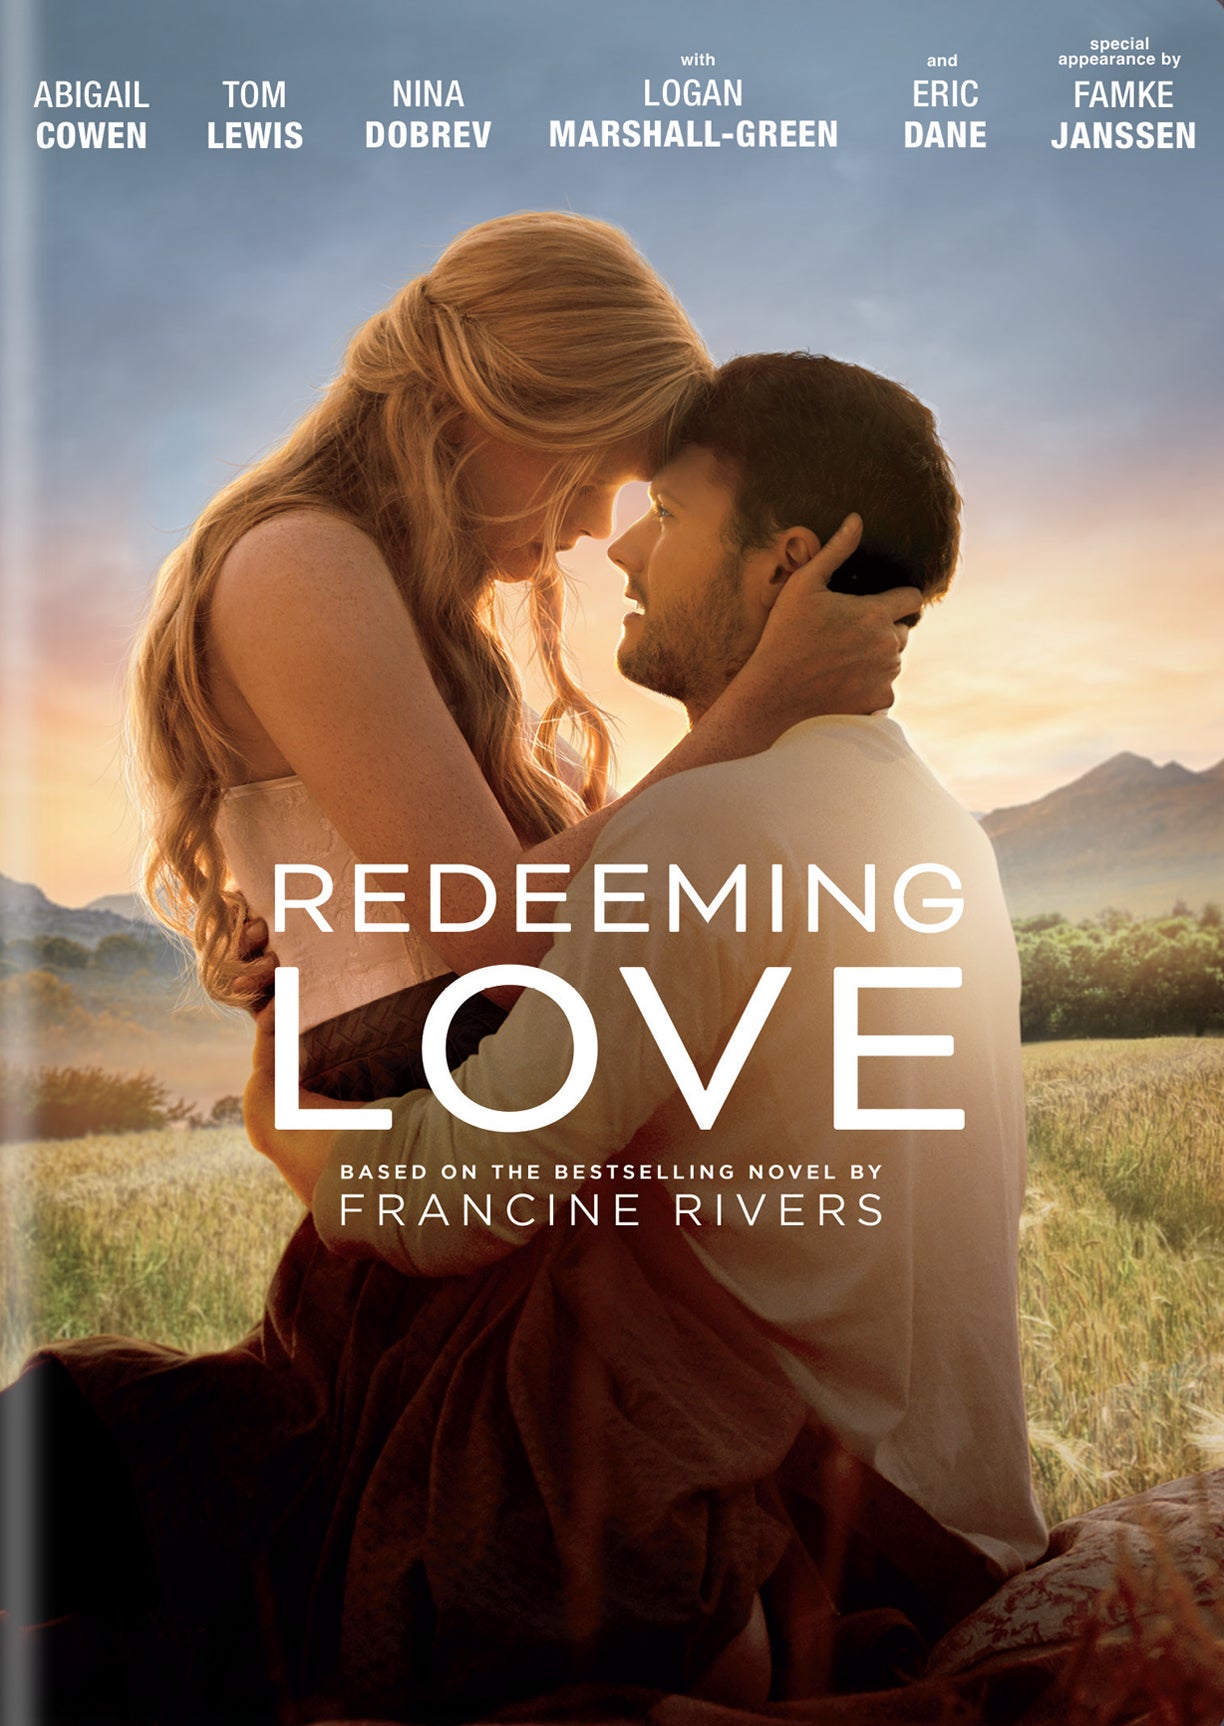 Redeeming Love cover art